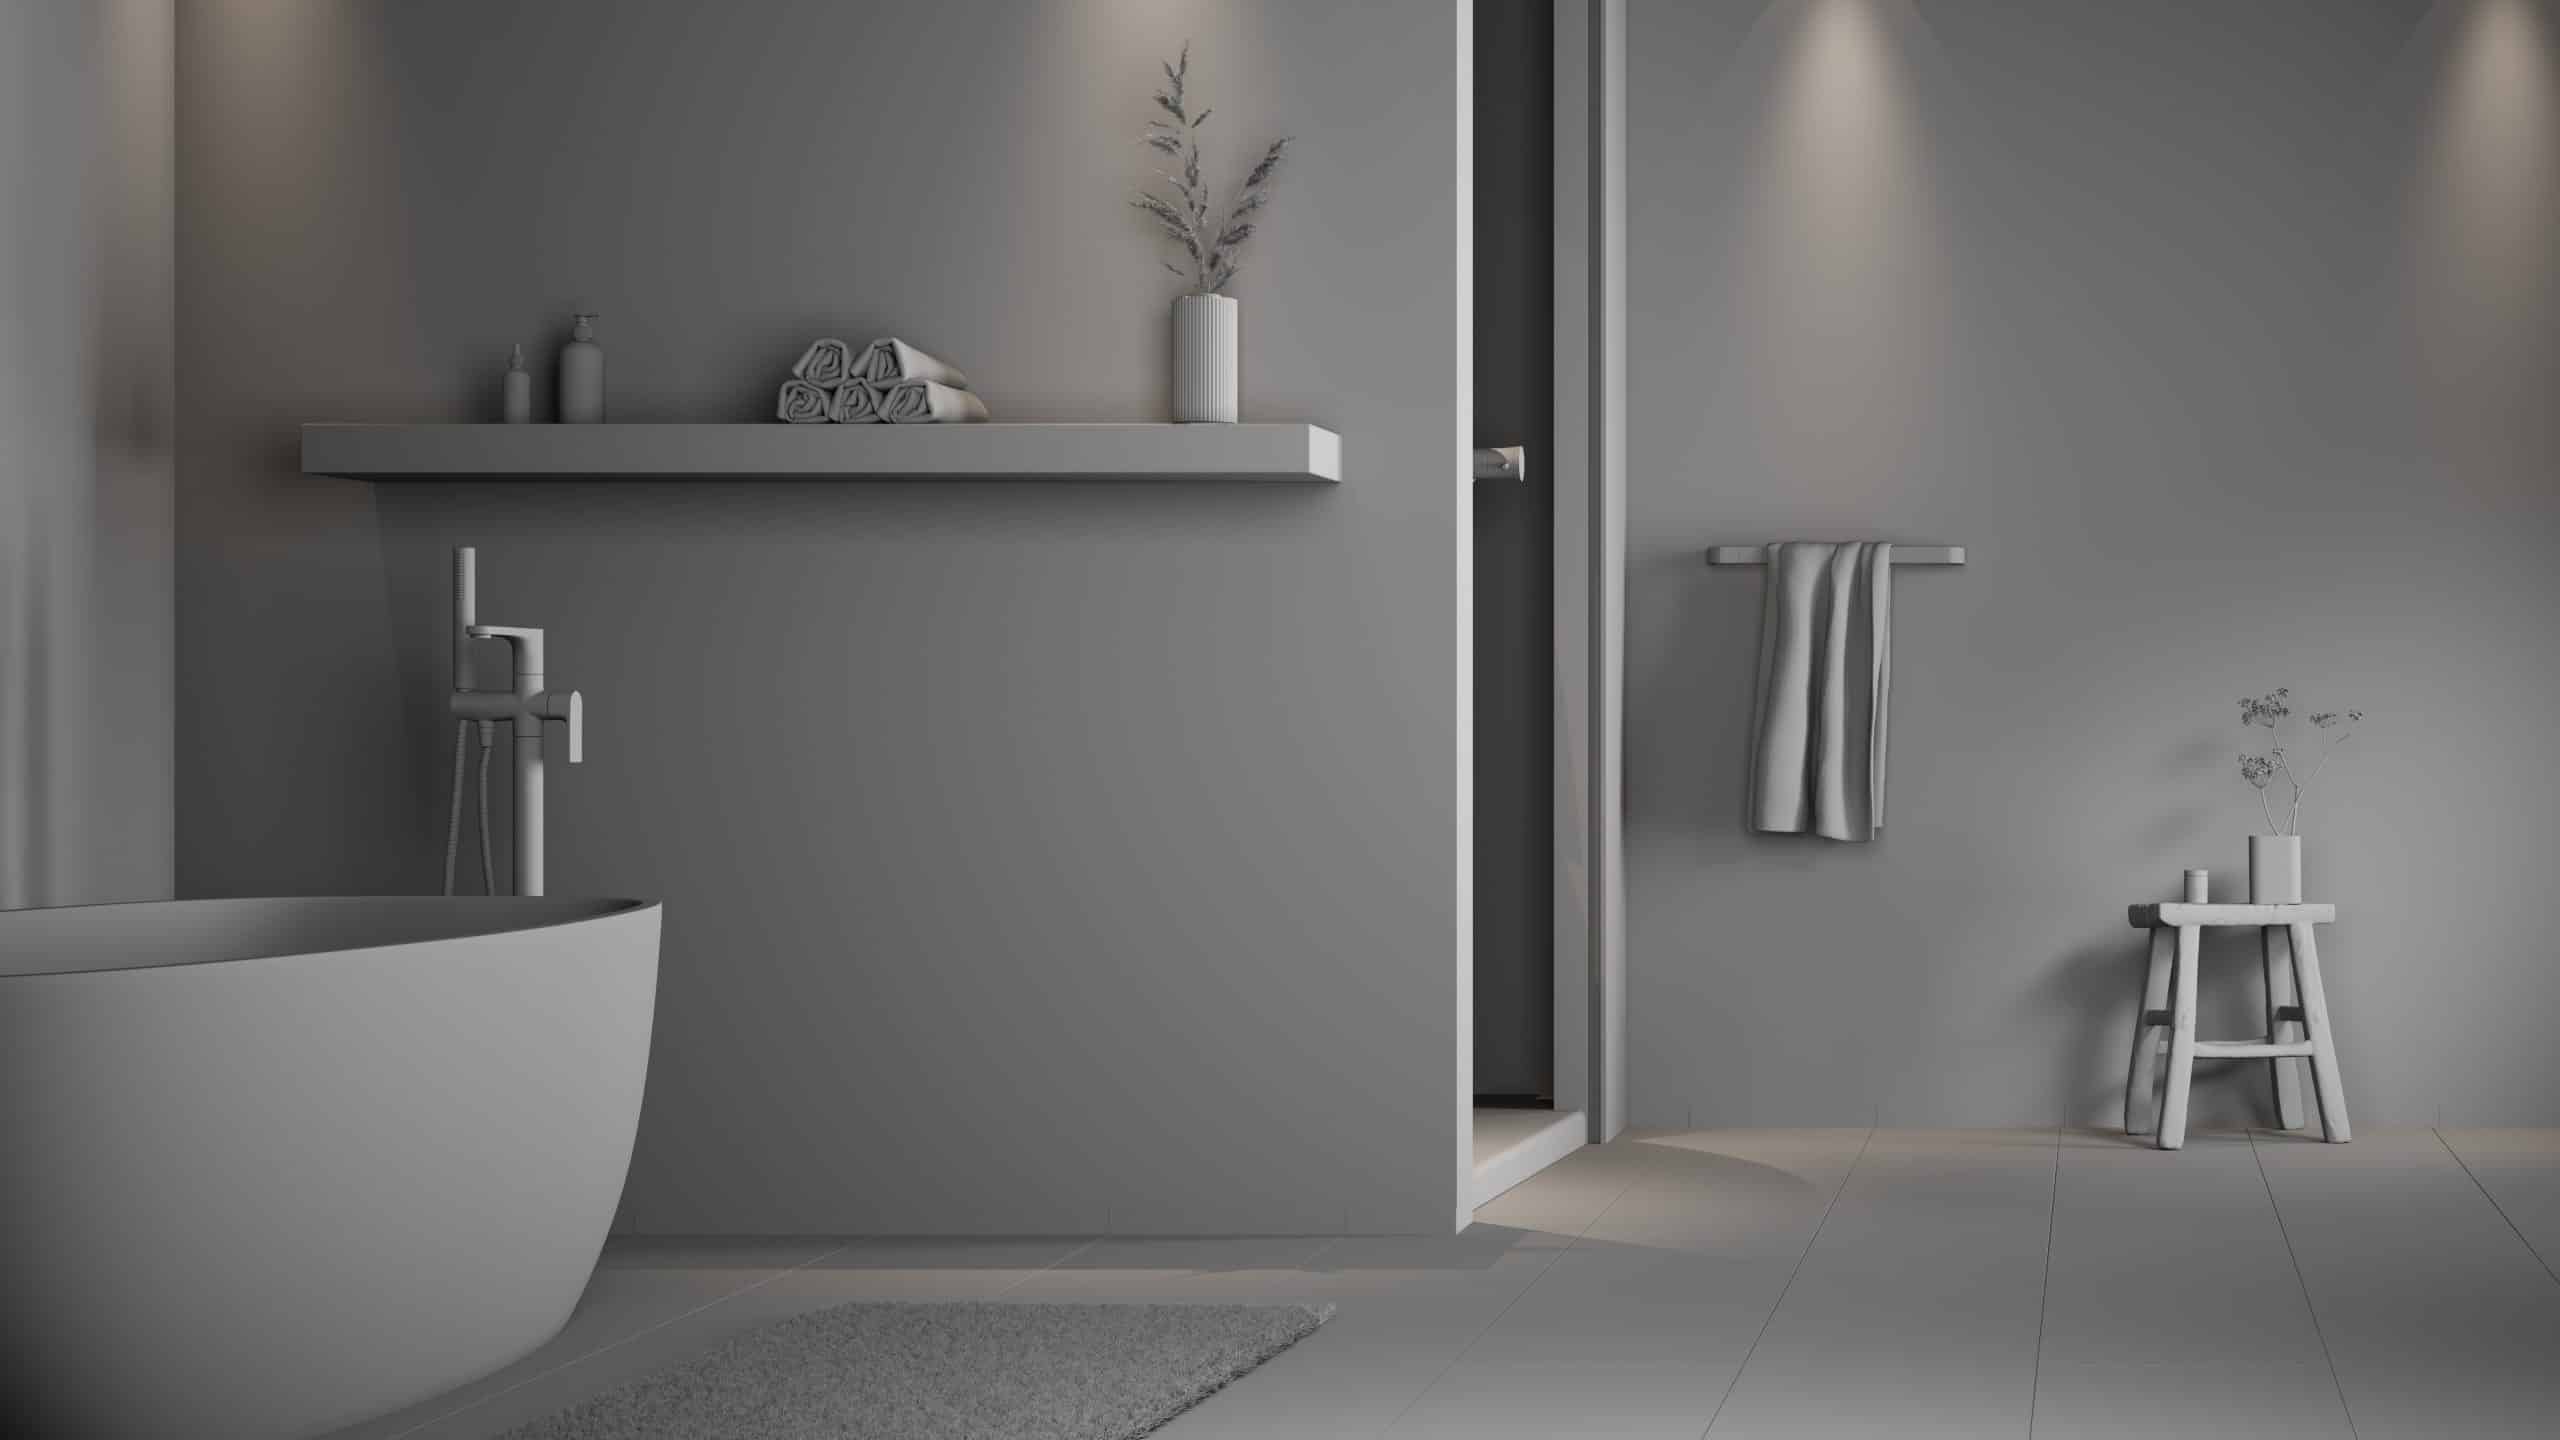 Unbearbeitete Ansicht | Bade­zim­mer Wand­ge­stal­tung Farbe | 3D-Visualisierung, Architecture, Interieur